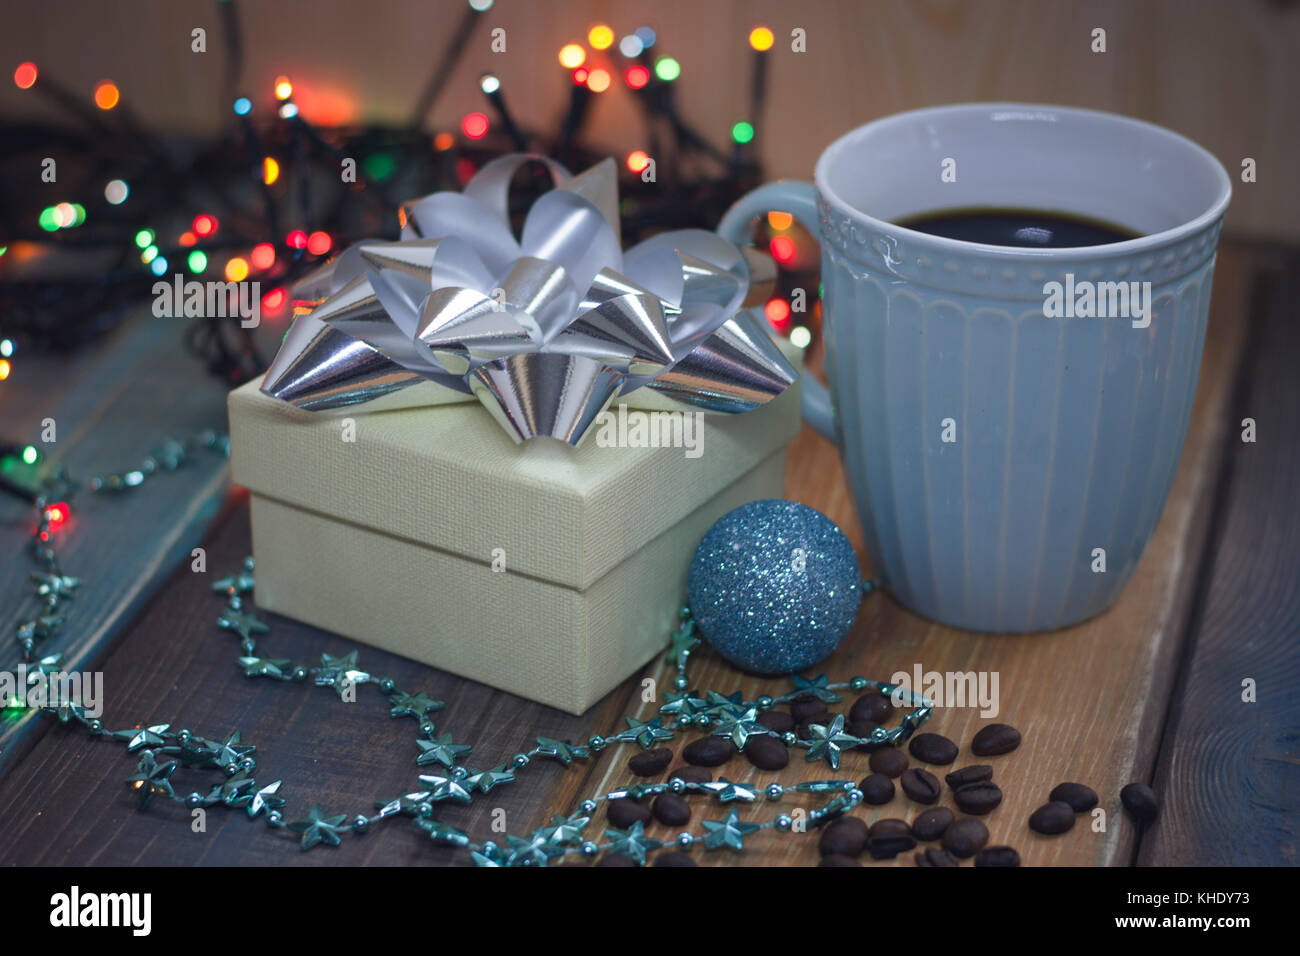 Weiß Geschenkbox, blaue Schale, blau glänzende Kugel auf dem Tisch Stockfoto